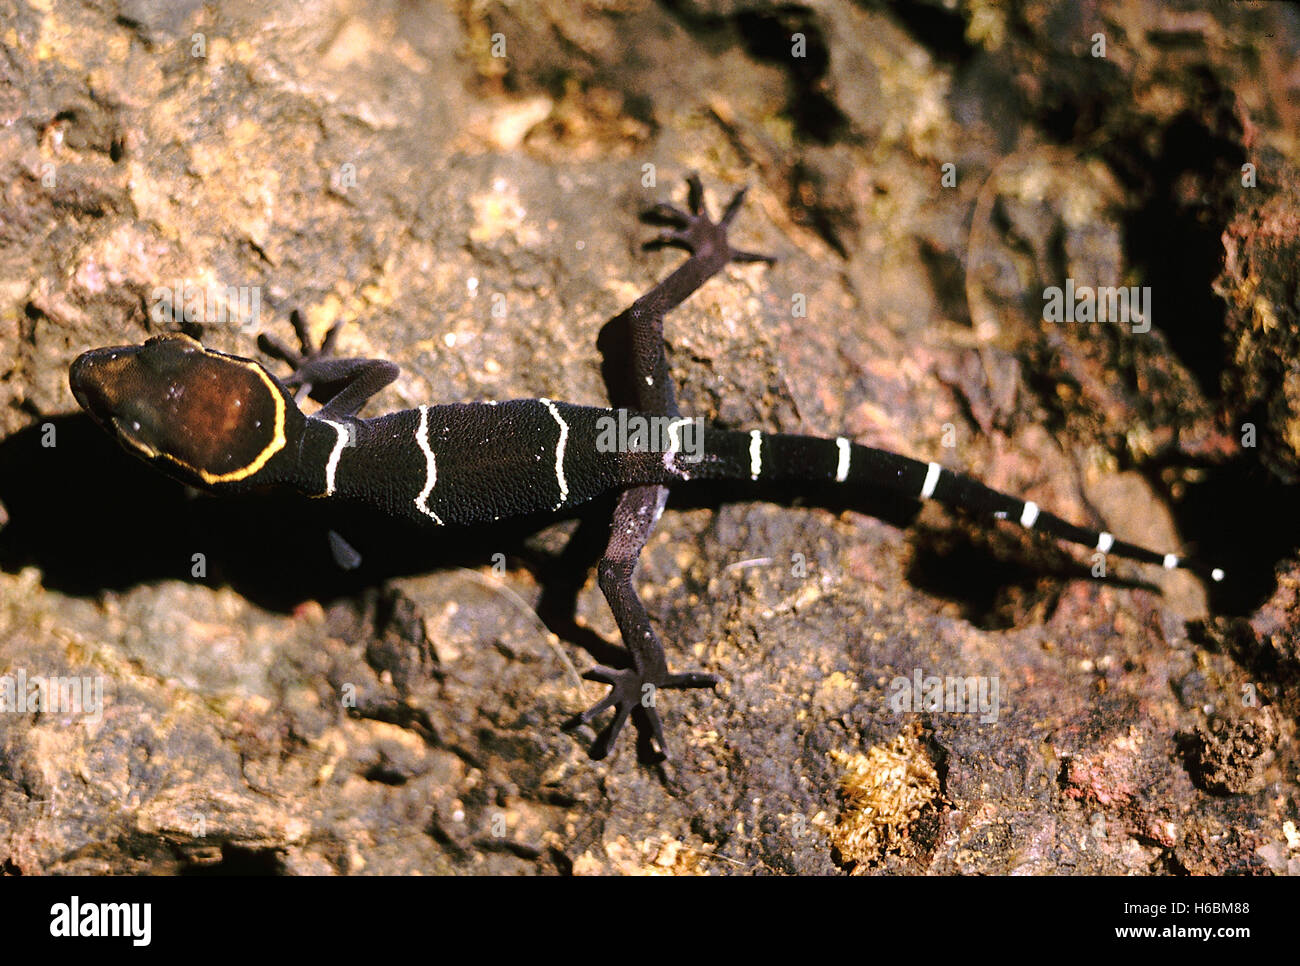 Cyrtodactylus sp. Gecko bagués Deccan. Une des espèces forestières typiques trouvés dans la nuit sur le sol de la forêt Banque D'Images